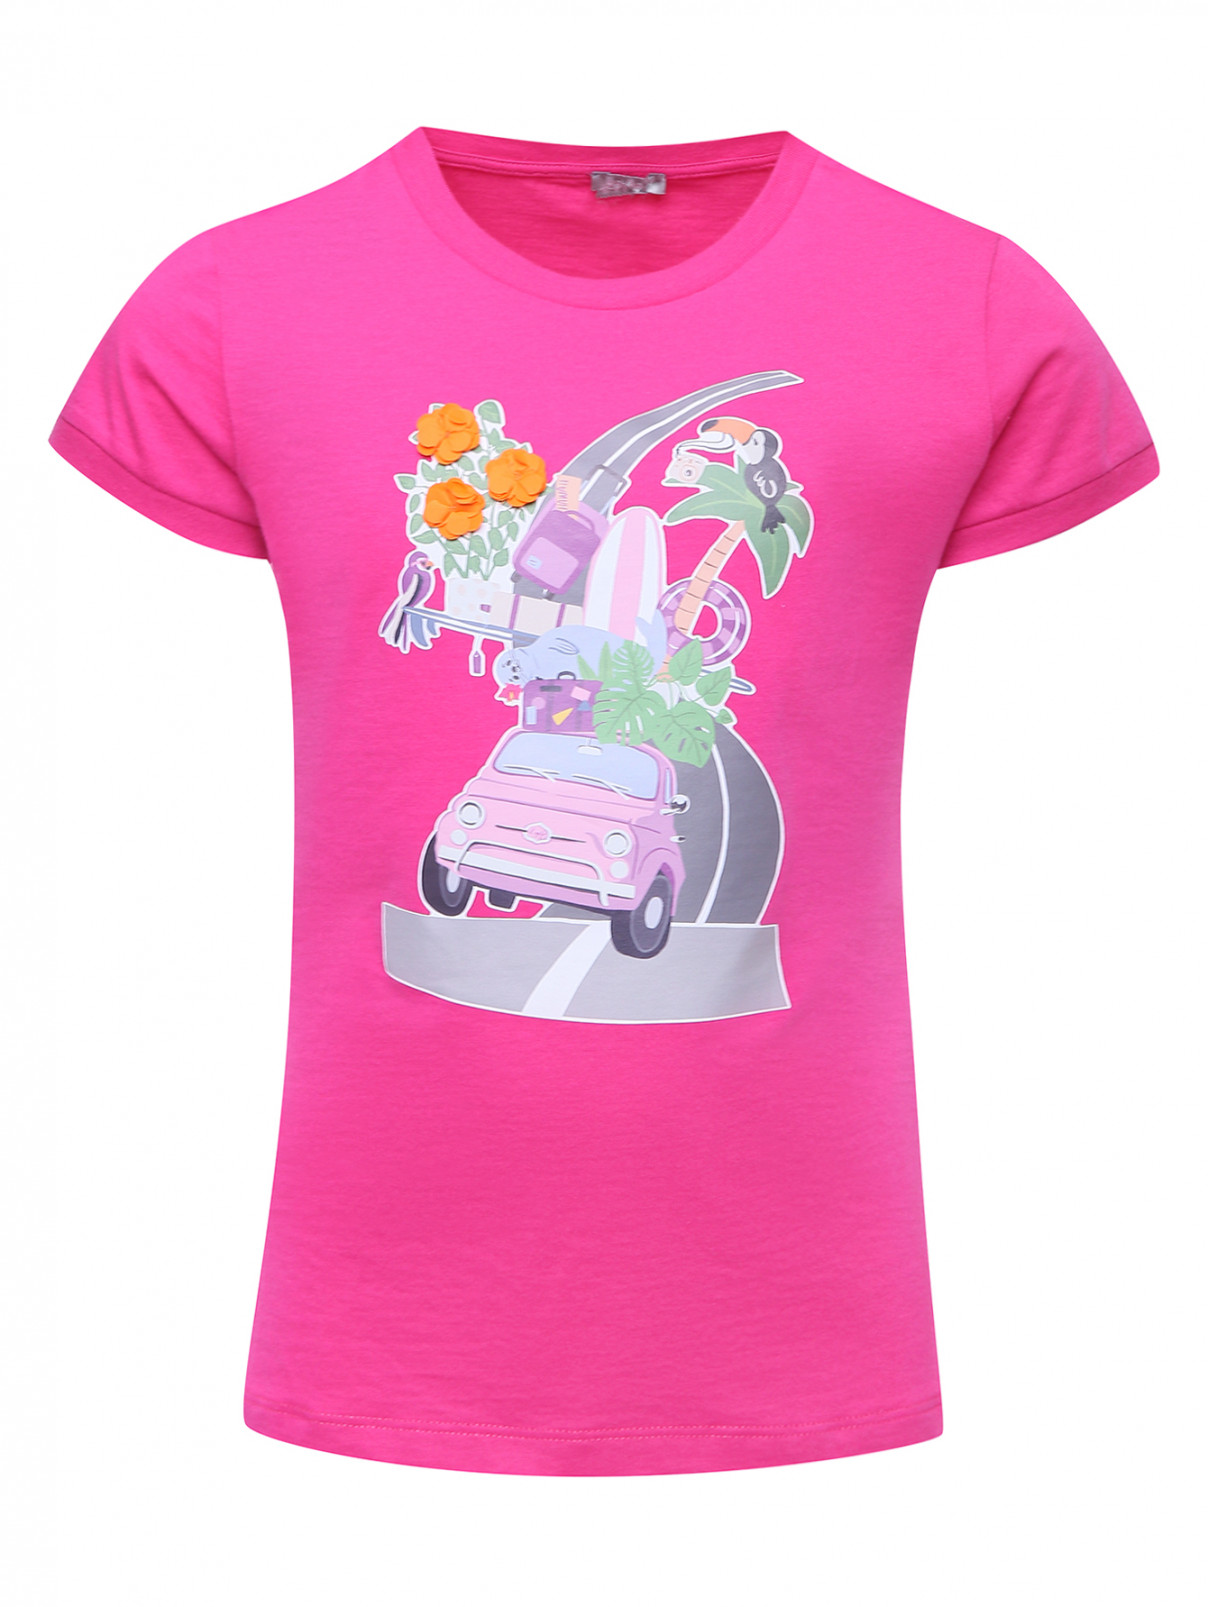 Хлопковая футболка с принтом Il Gufo  –  Общий вид  – Цвет:  Розовый